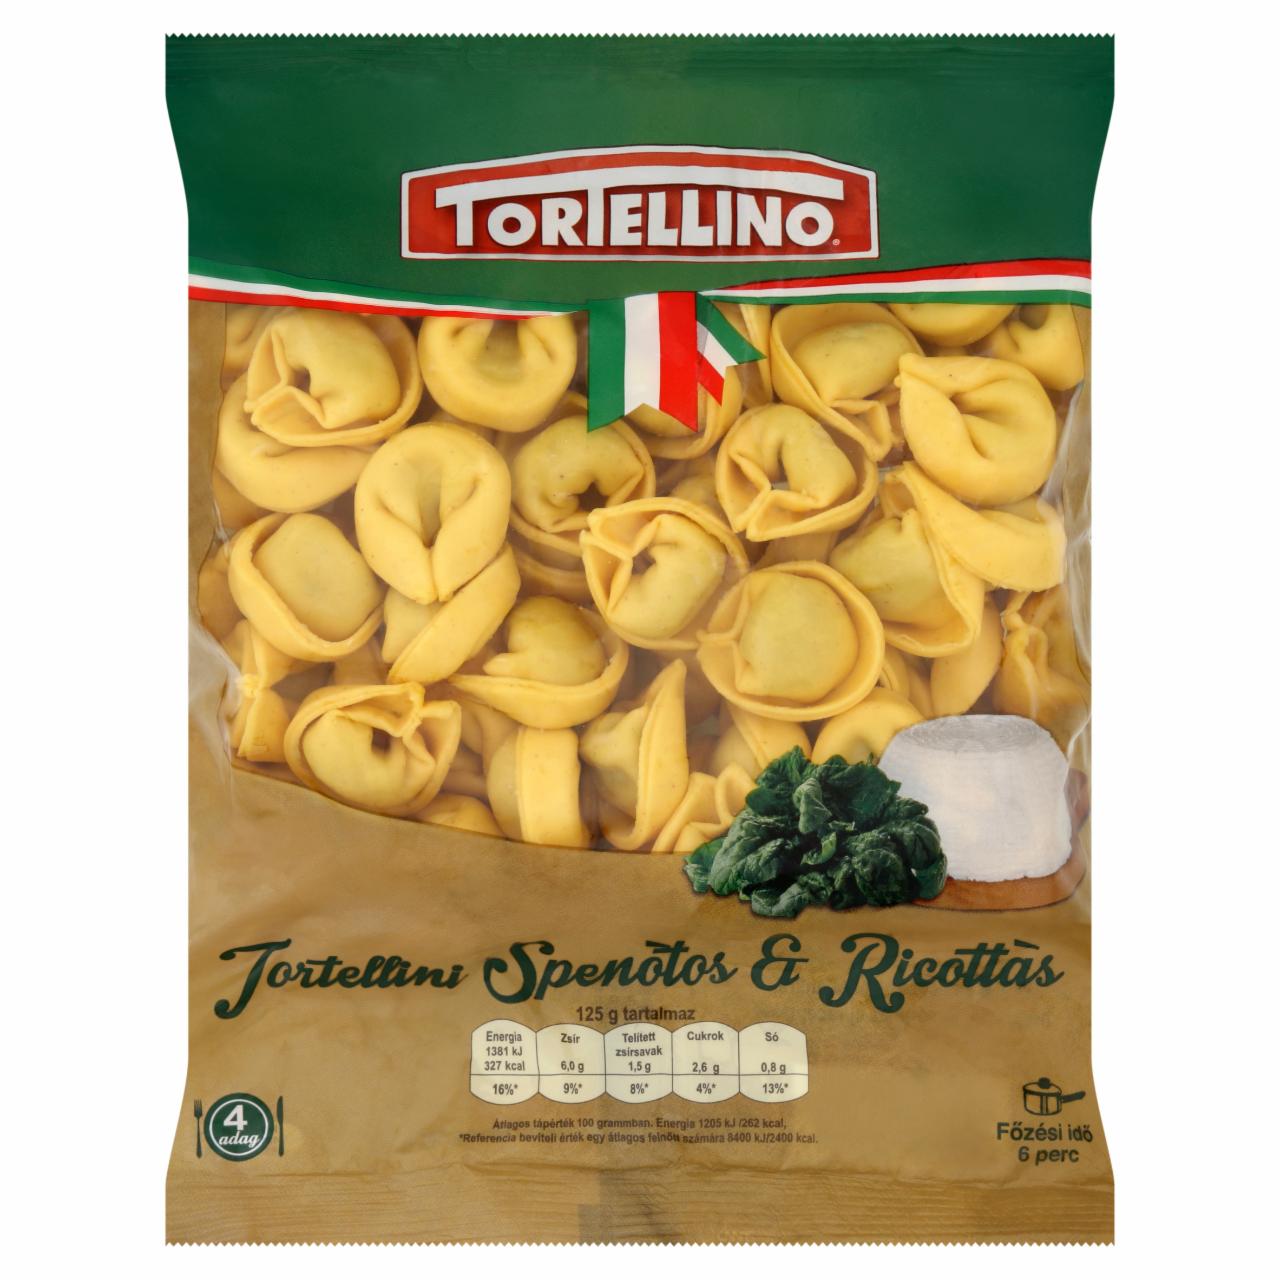 Képek - Tortellino Tortellini spenótos & ricottás friss tészta 500 g